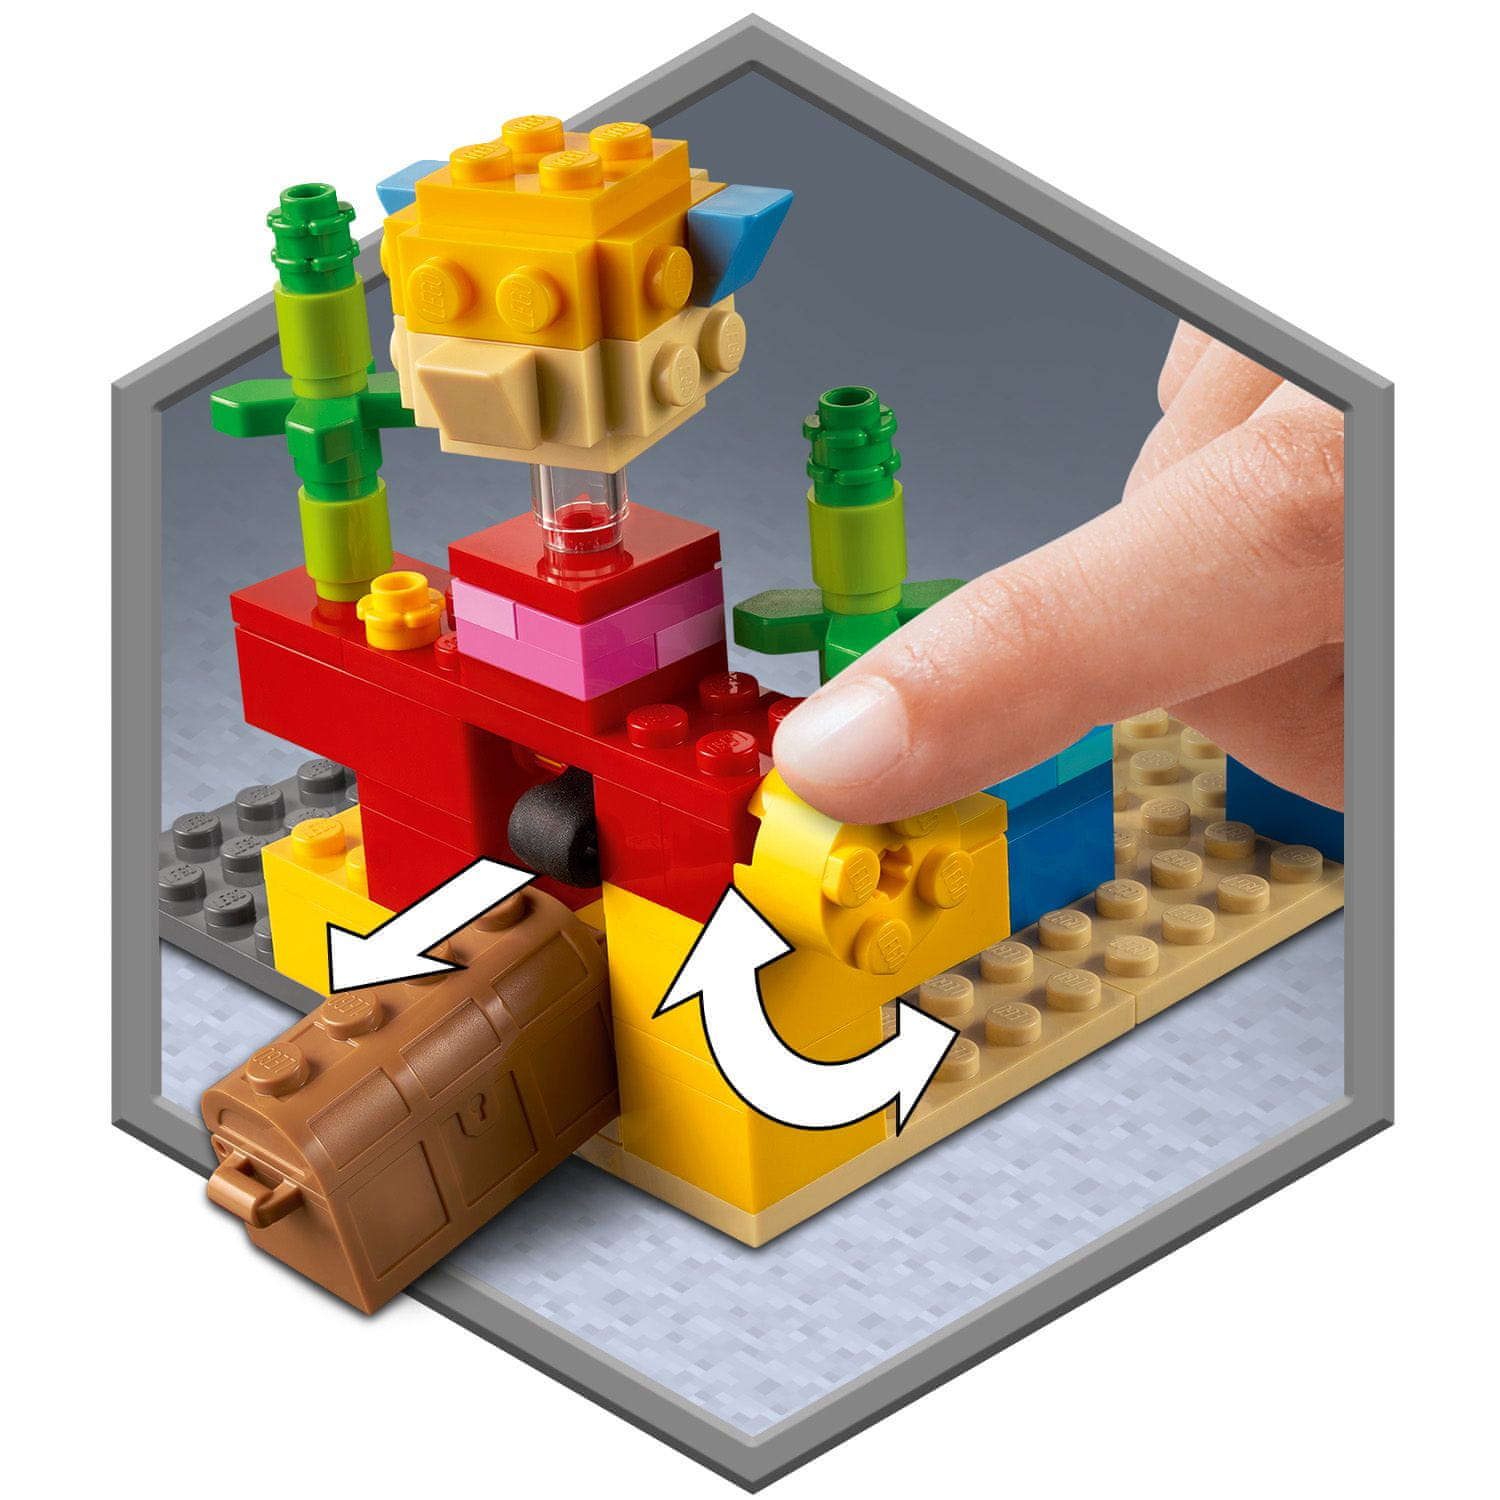 LEGO Minecraft 21164 Korálový útes